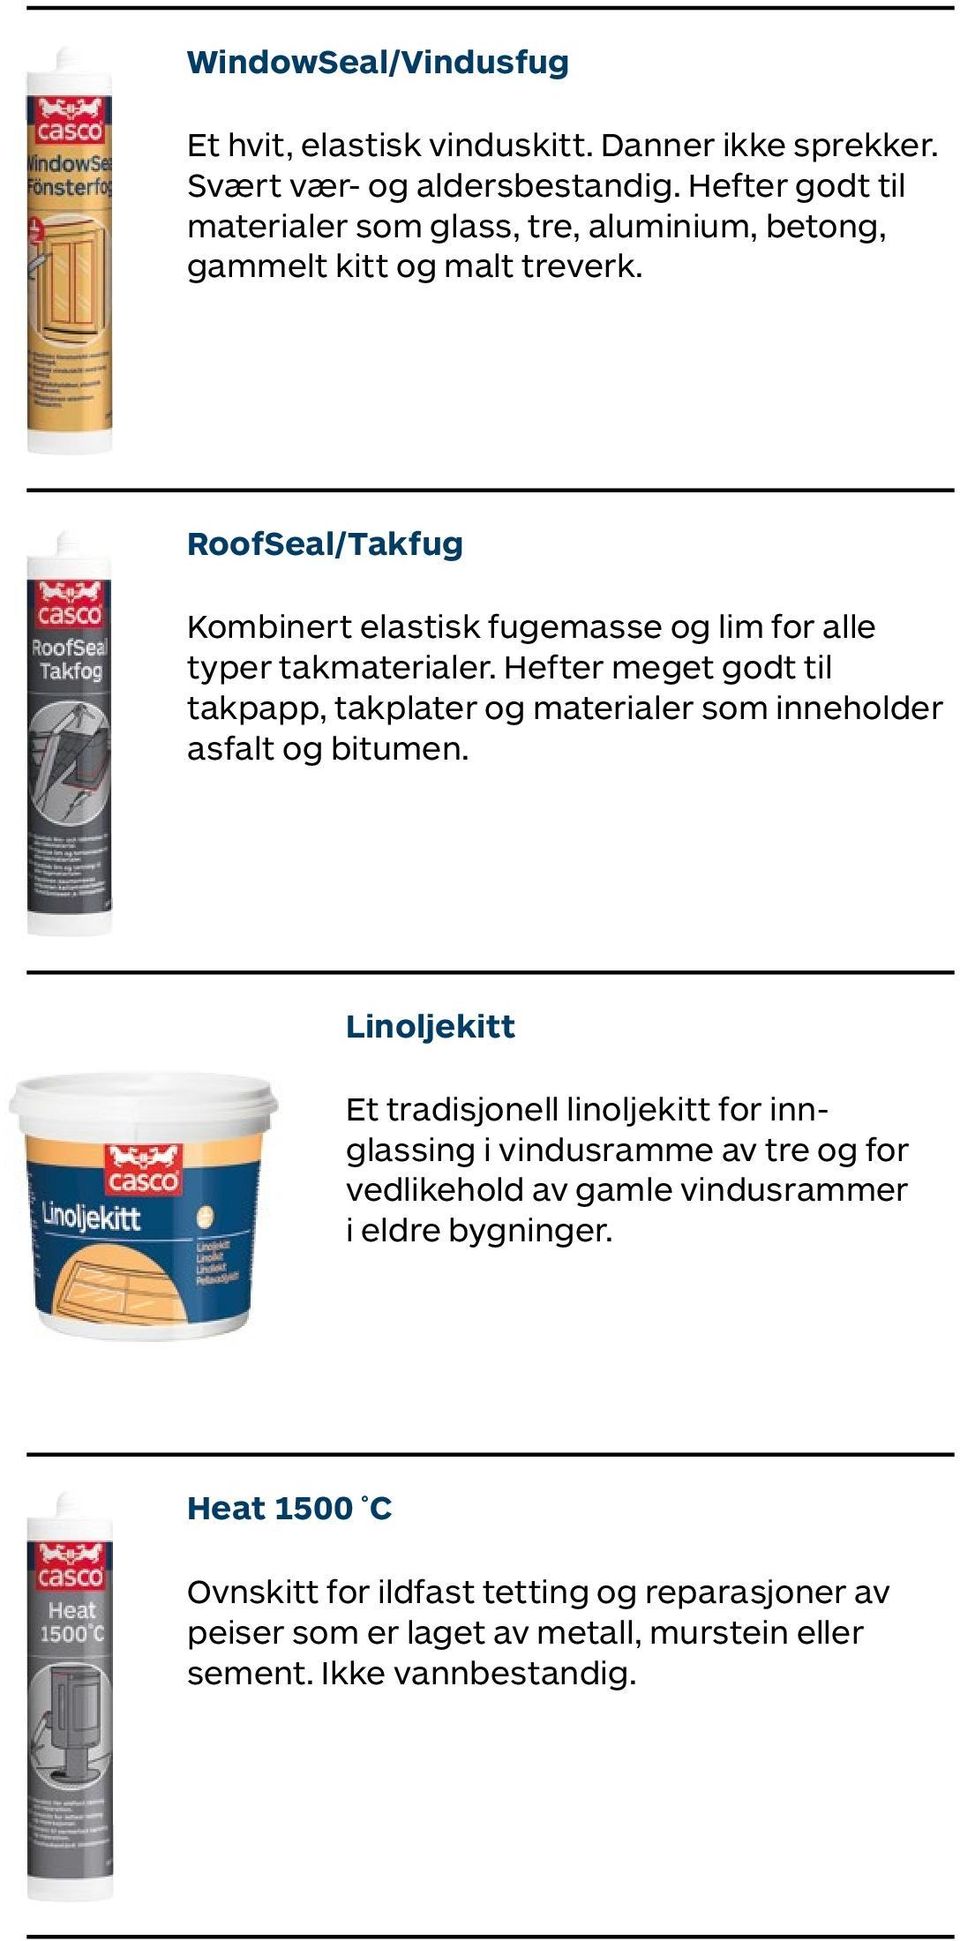 RoofSeal/Takfug Kombinert elastisk fugemasse og lim for alle typer takmaterialer.